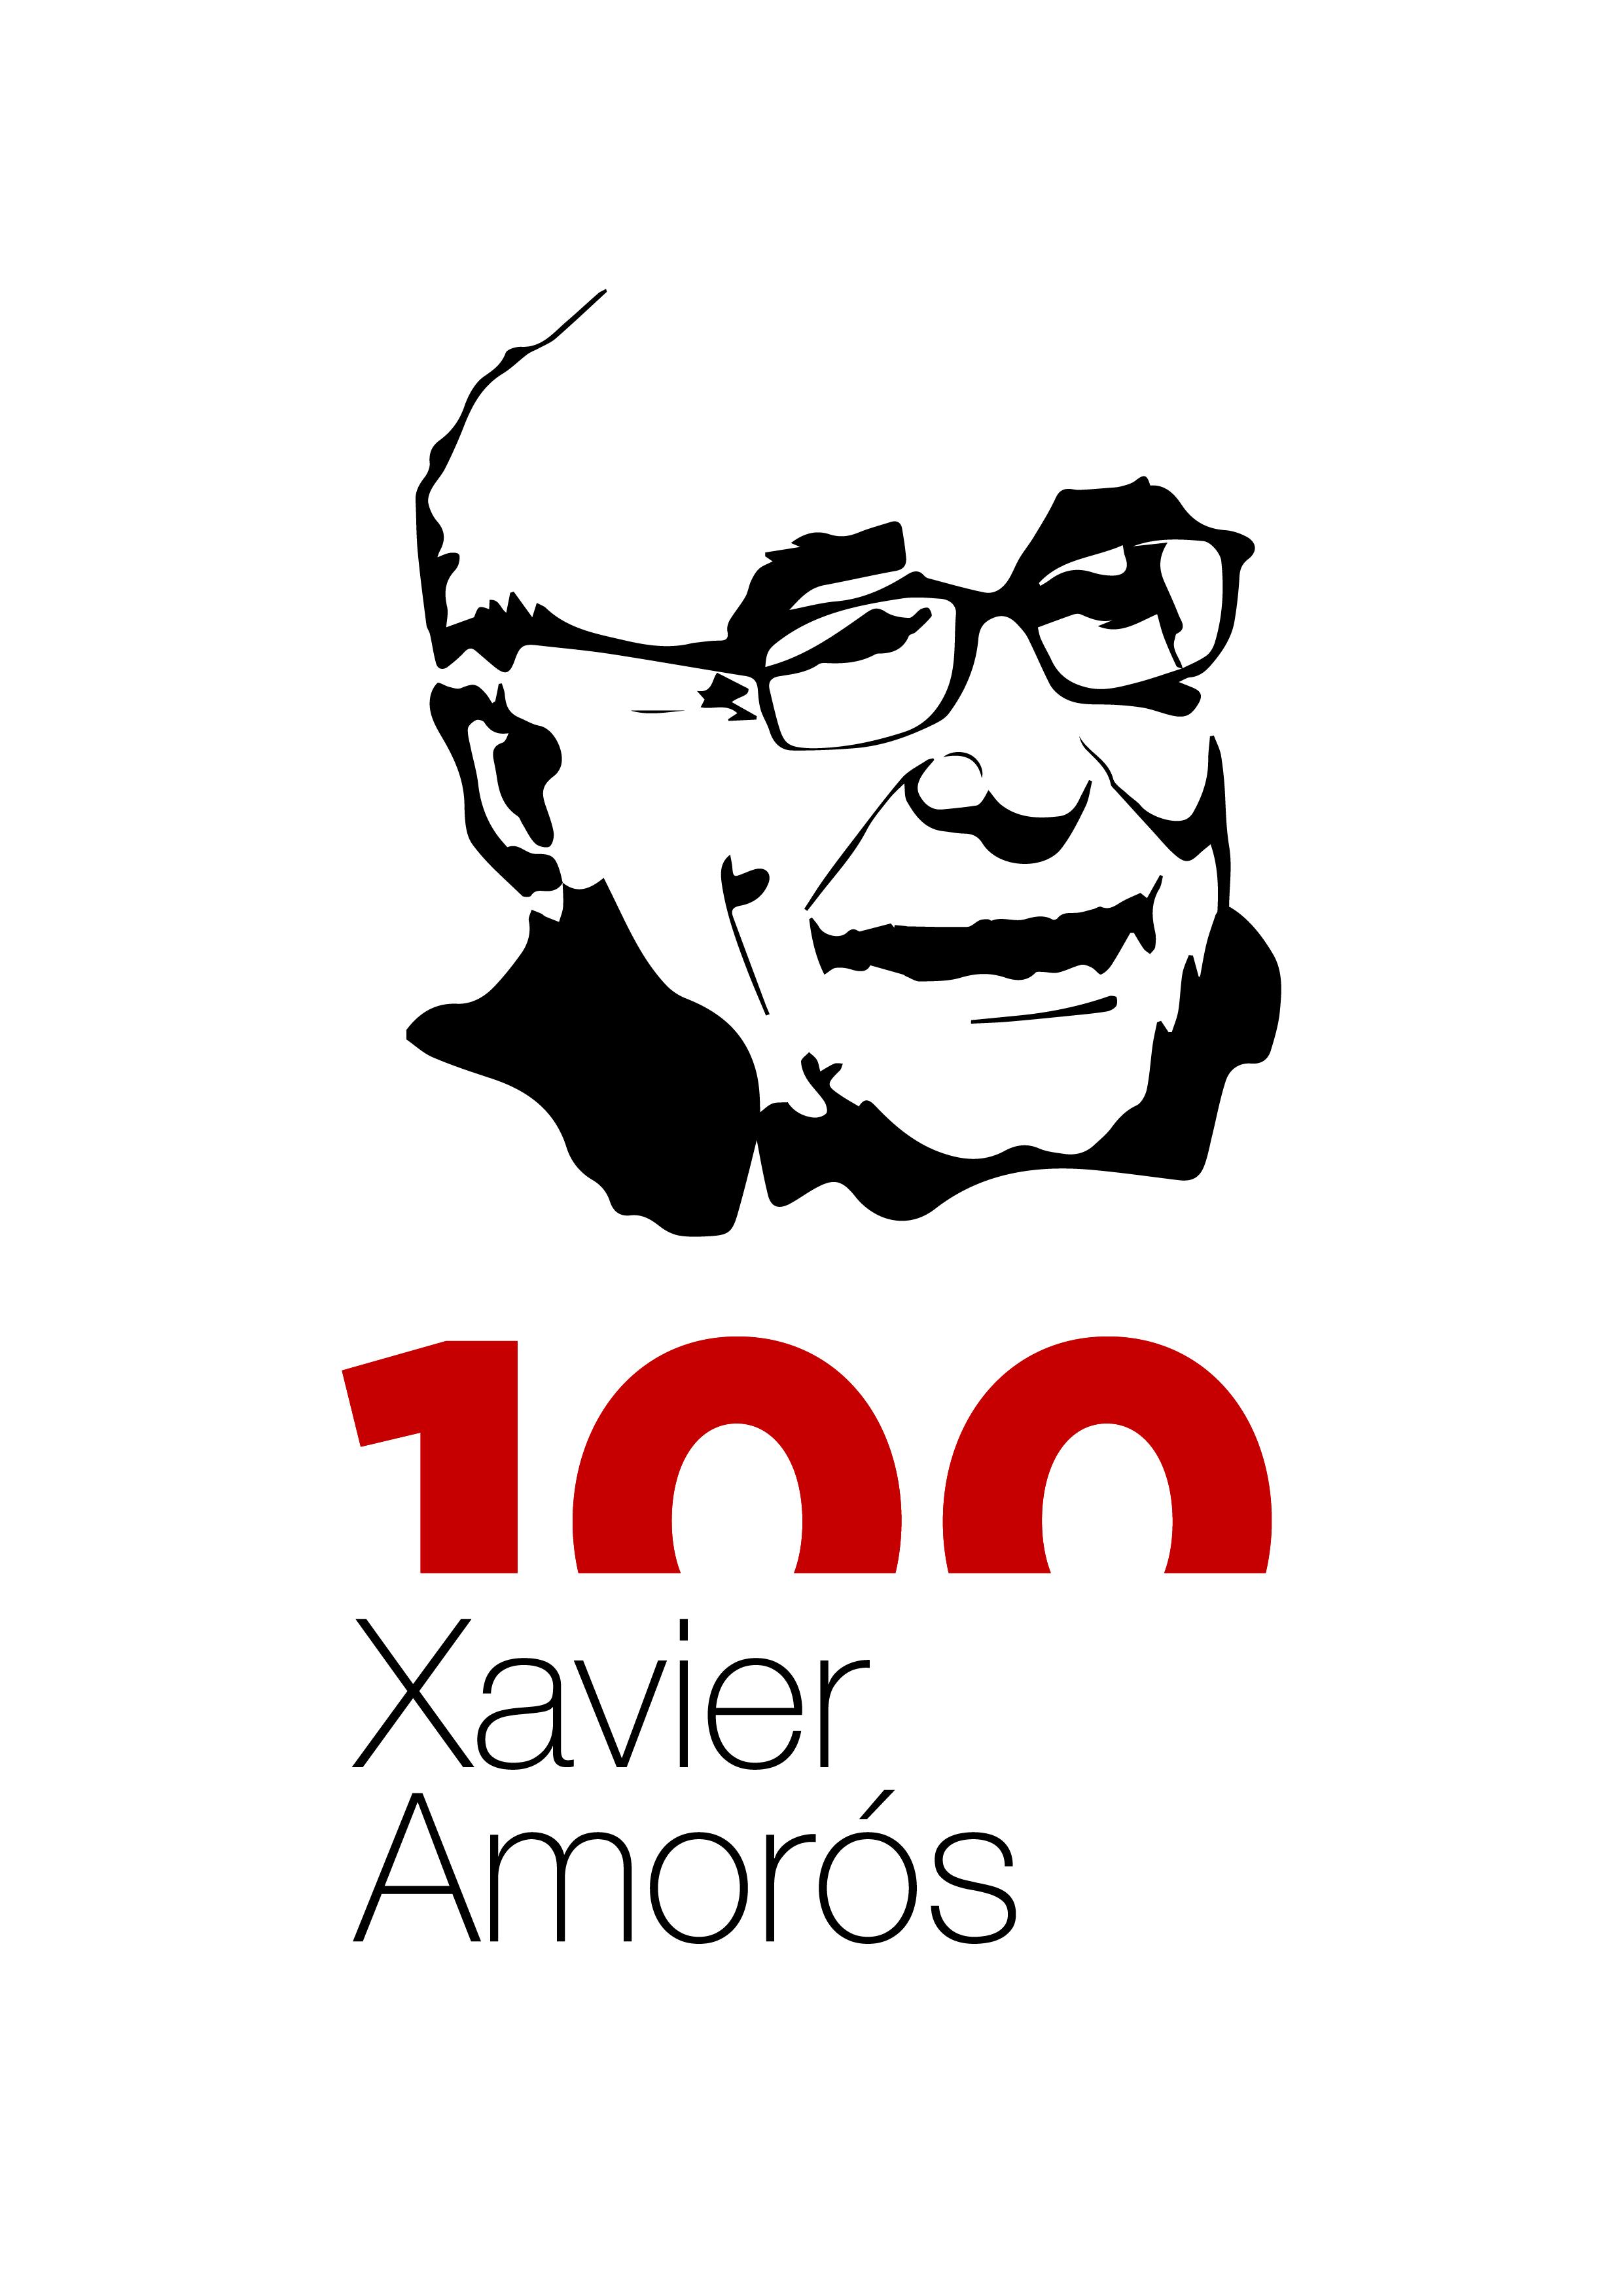 Acte d’obertura de l’Any Xavier Amorós